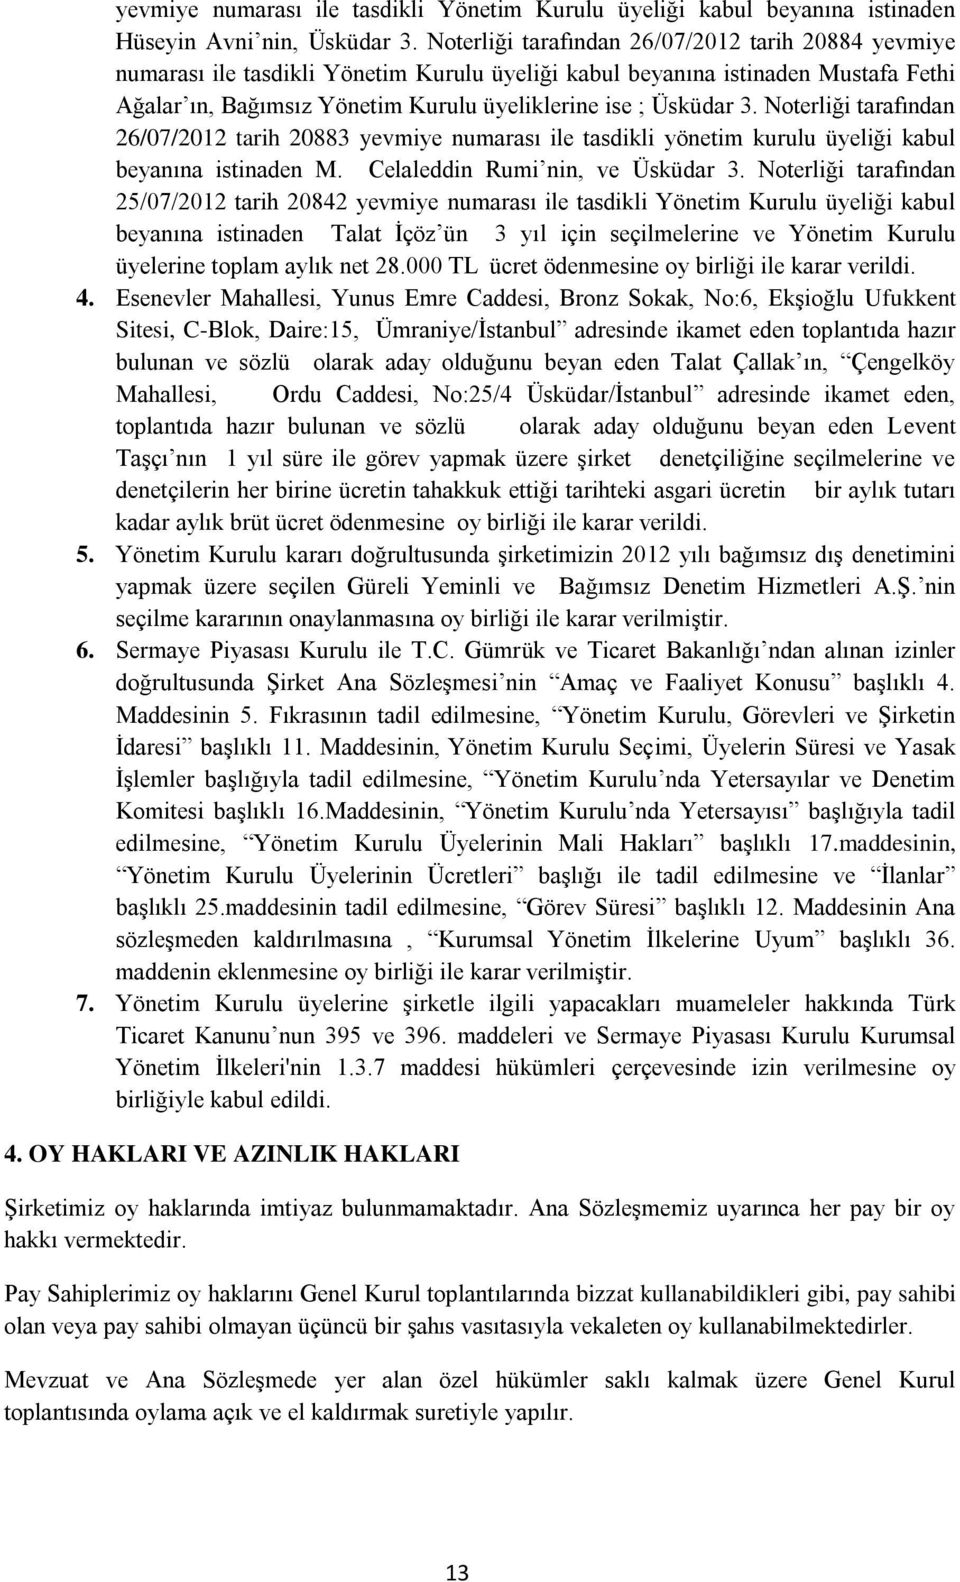 Noterliği tarafından 26/07/2012 tarih 20883 yevmiye numarası ile tasdikli yönetim kurulu üyeliği kabul beyanına istinaden M. Celaleddin Rumi nin, ve Üsküdar 3.